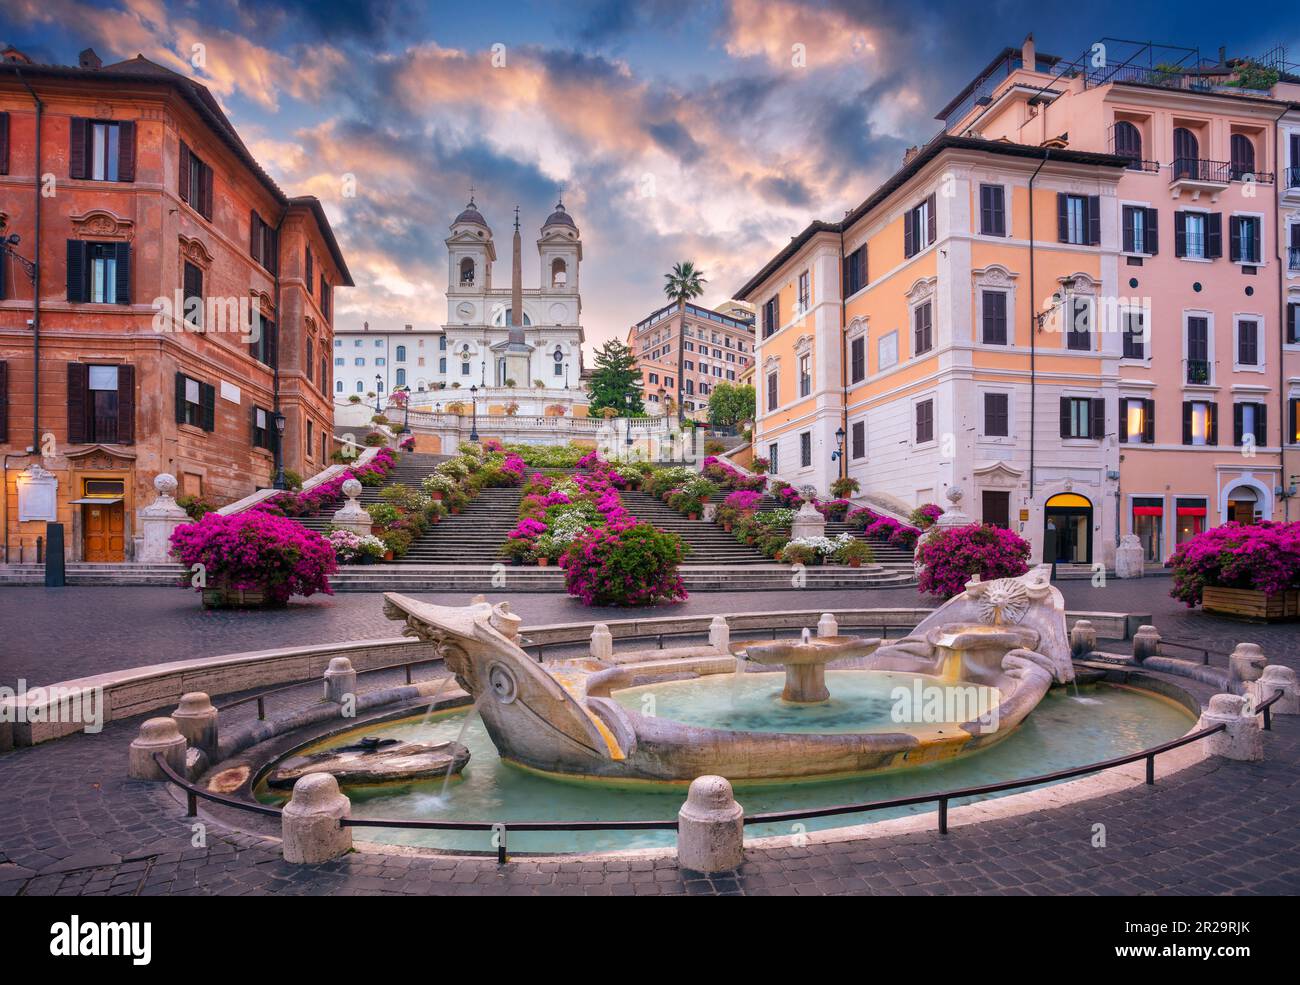 Piazza di Spagna, Roma, Italia. Immagine di Piazza di Spagna e Fontana di Barcaccia a Roma all'alba. Foto Stock